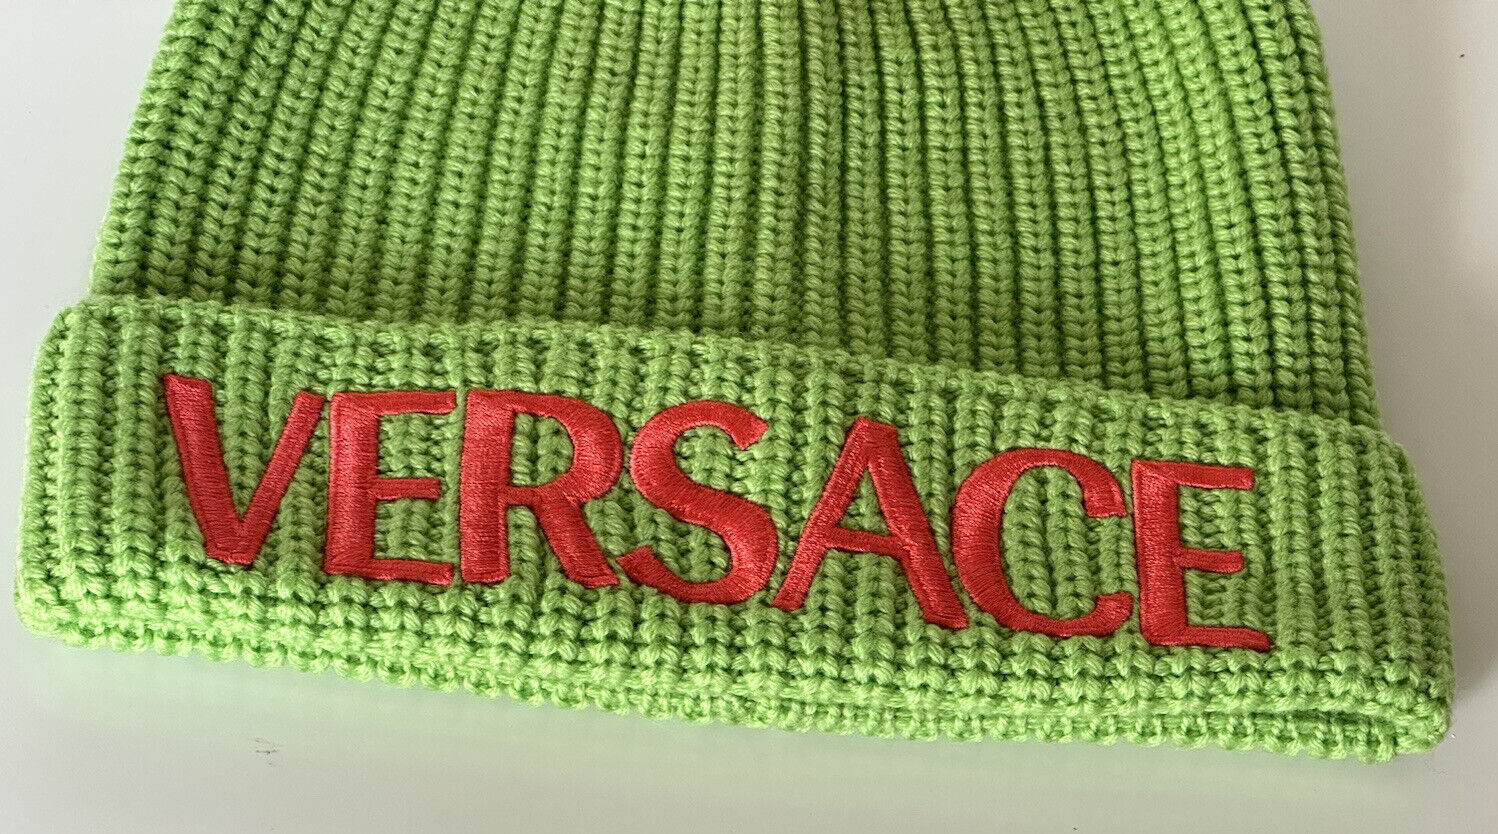 NWT $495 Versace Knit Beanie Шерстяная зеленая шапка с вышивкой логотипа 1001181 Италия 